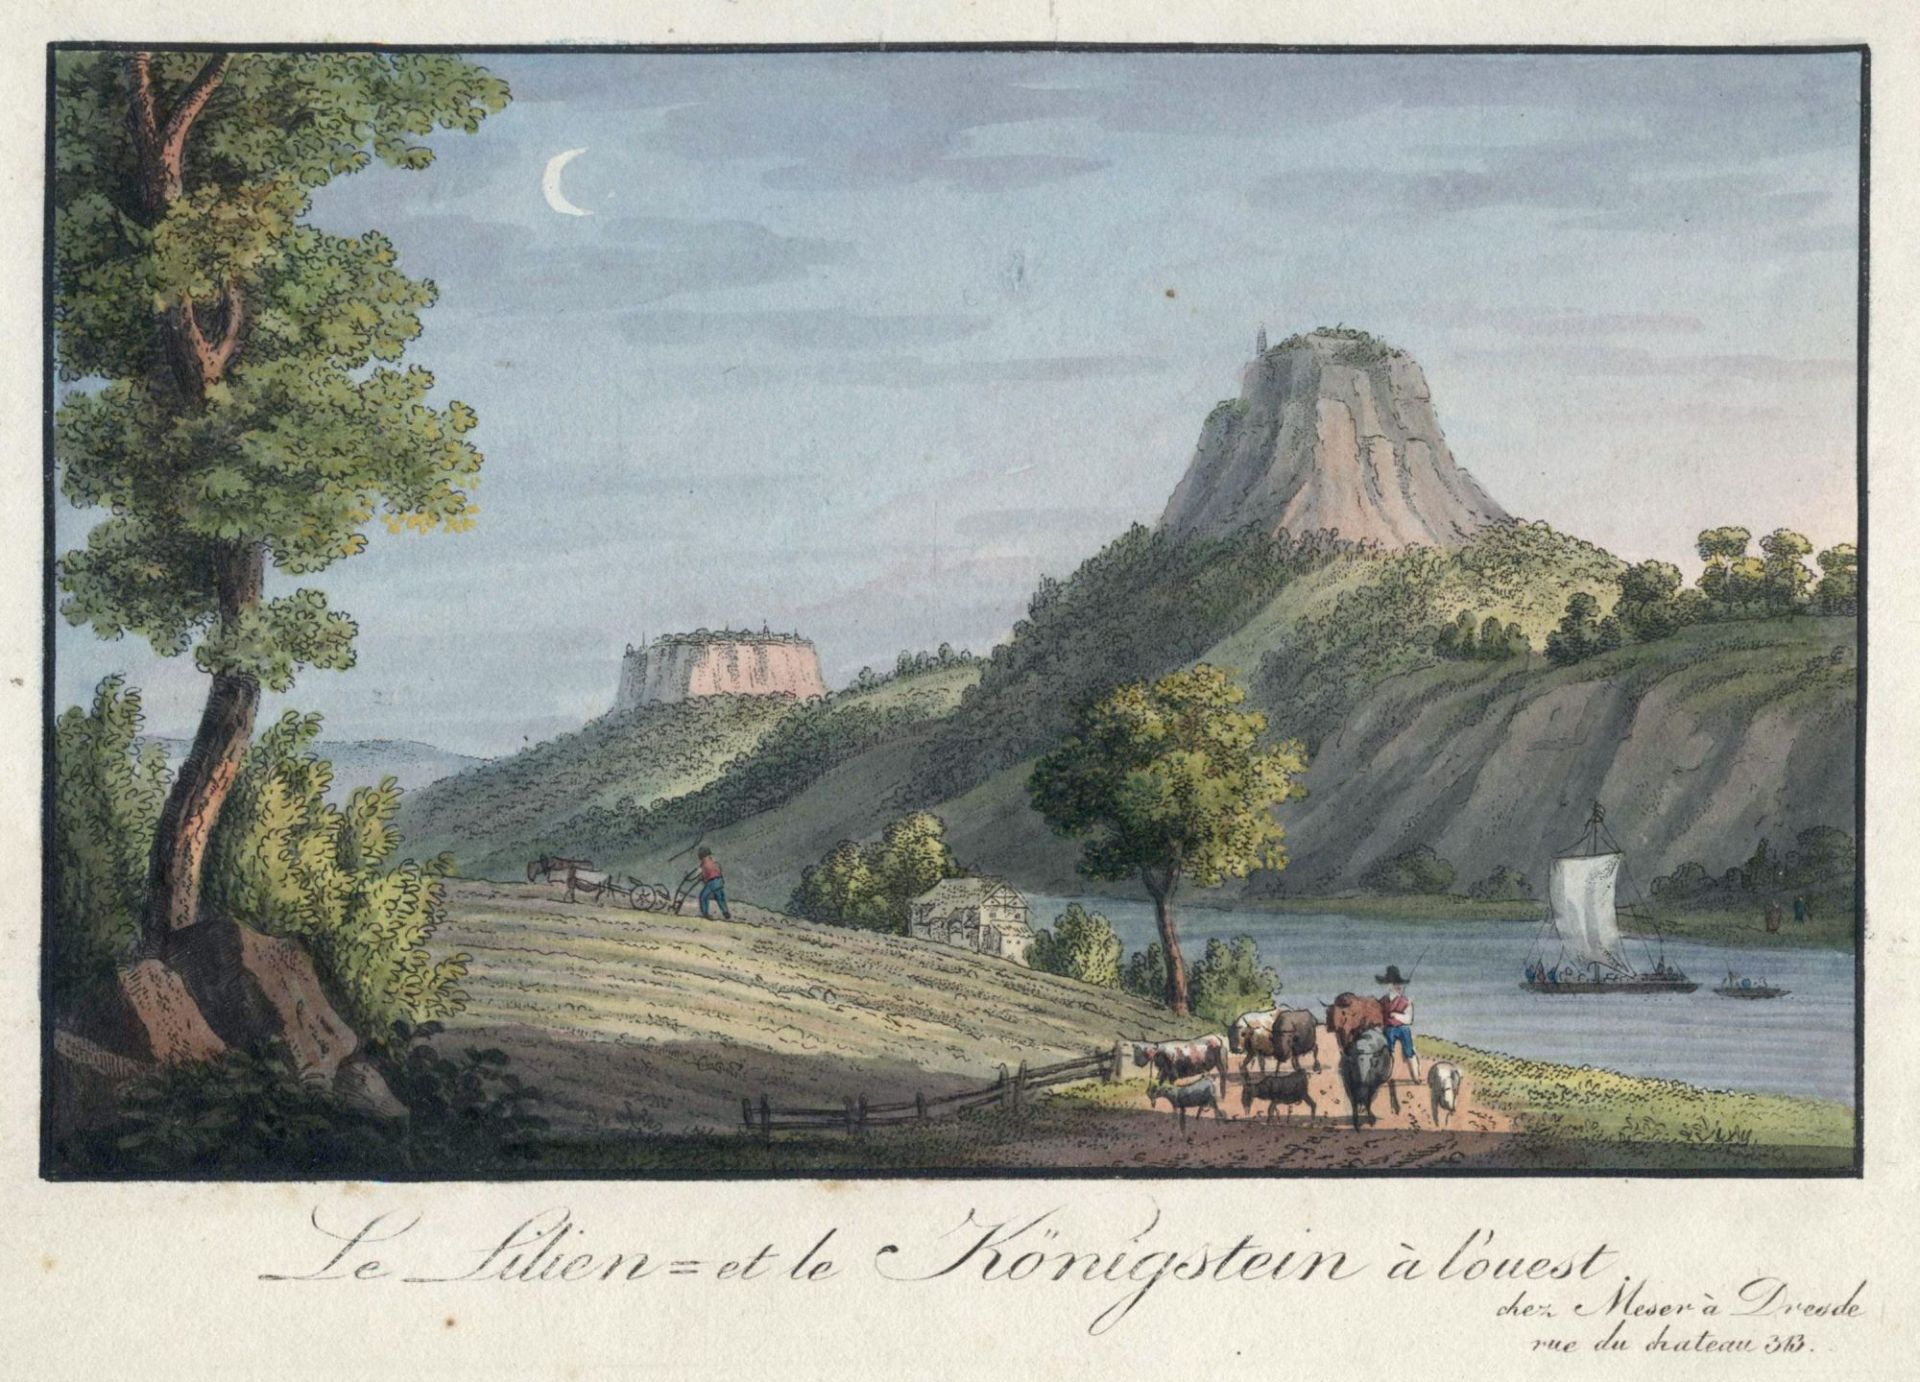 C. F. Meser "Le Lilienstein = et le Königstein á l'ouest". Um 1830.